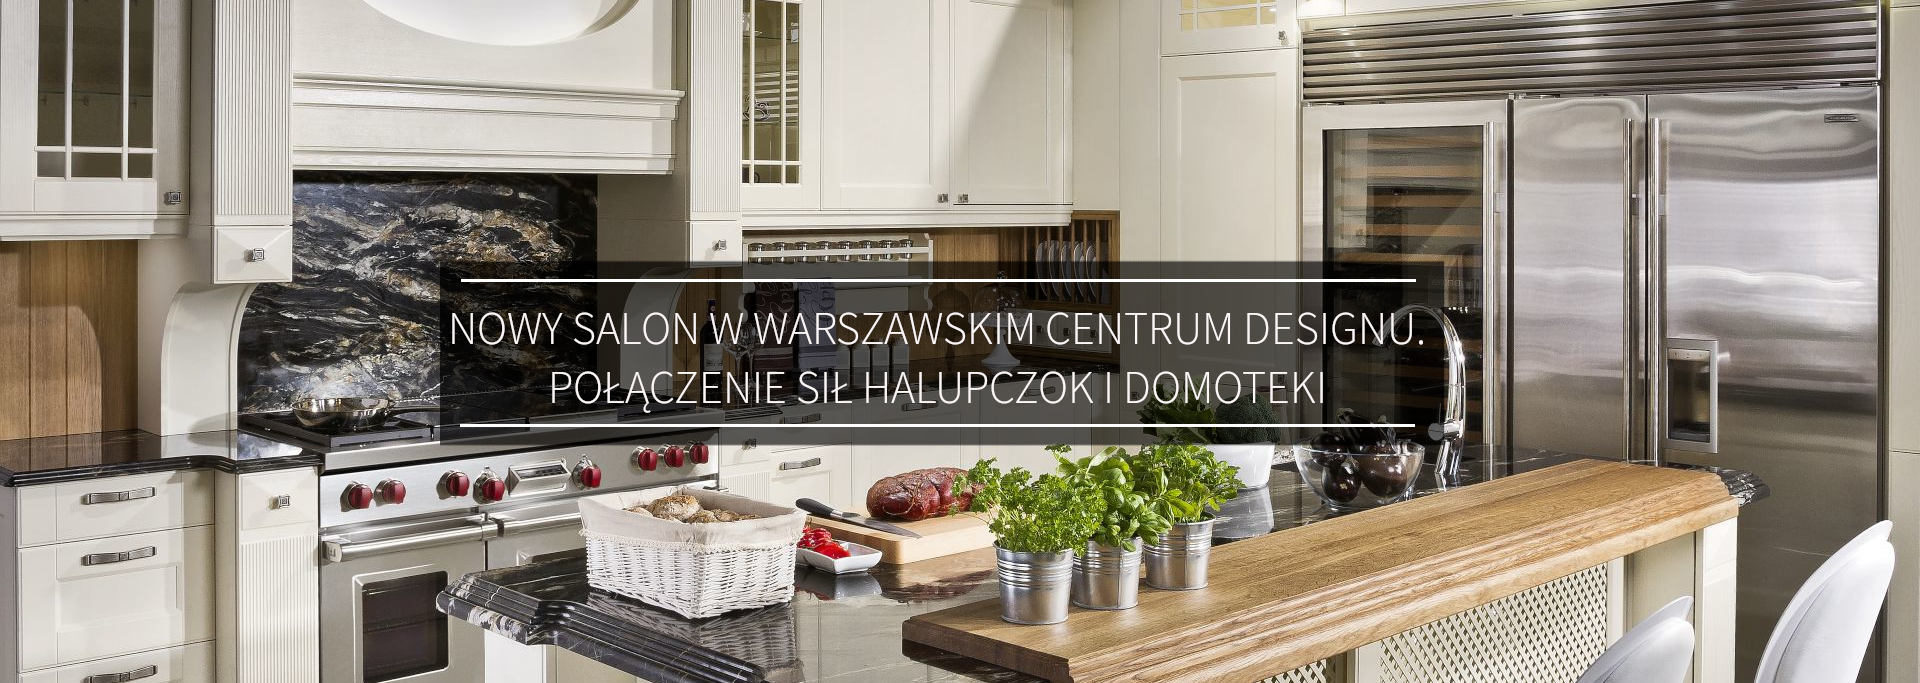 Nowy salon w warszawskim Centrum Designu. Połączenie sił Halupczok i Domoteki